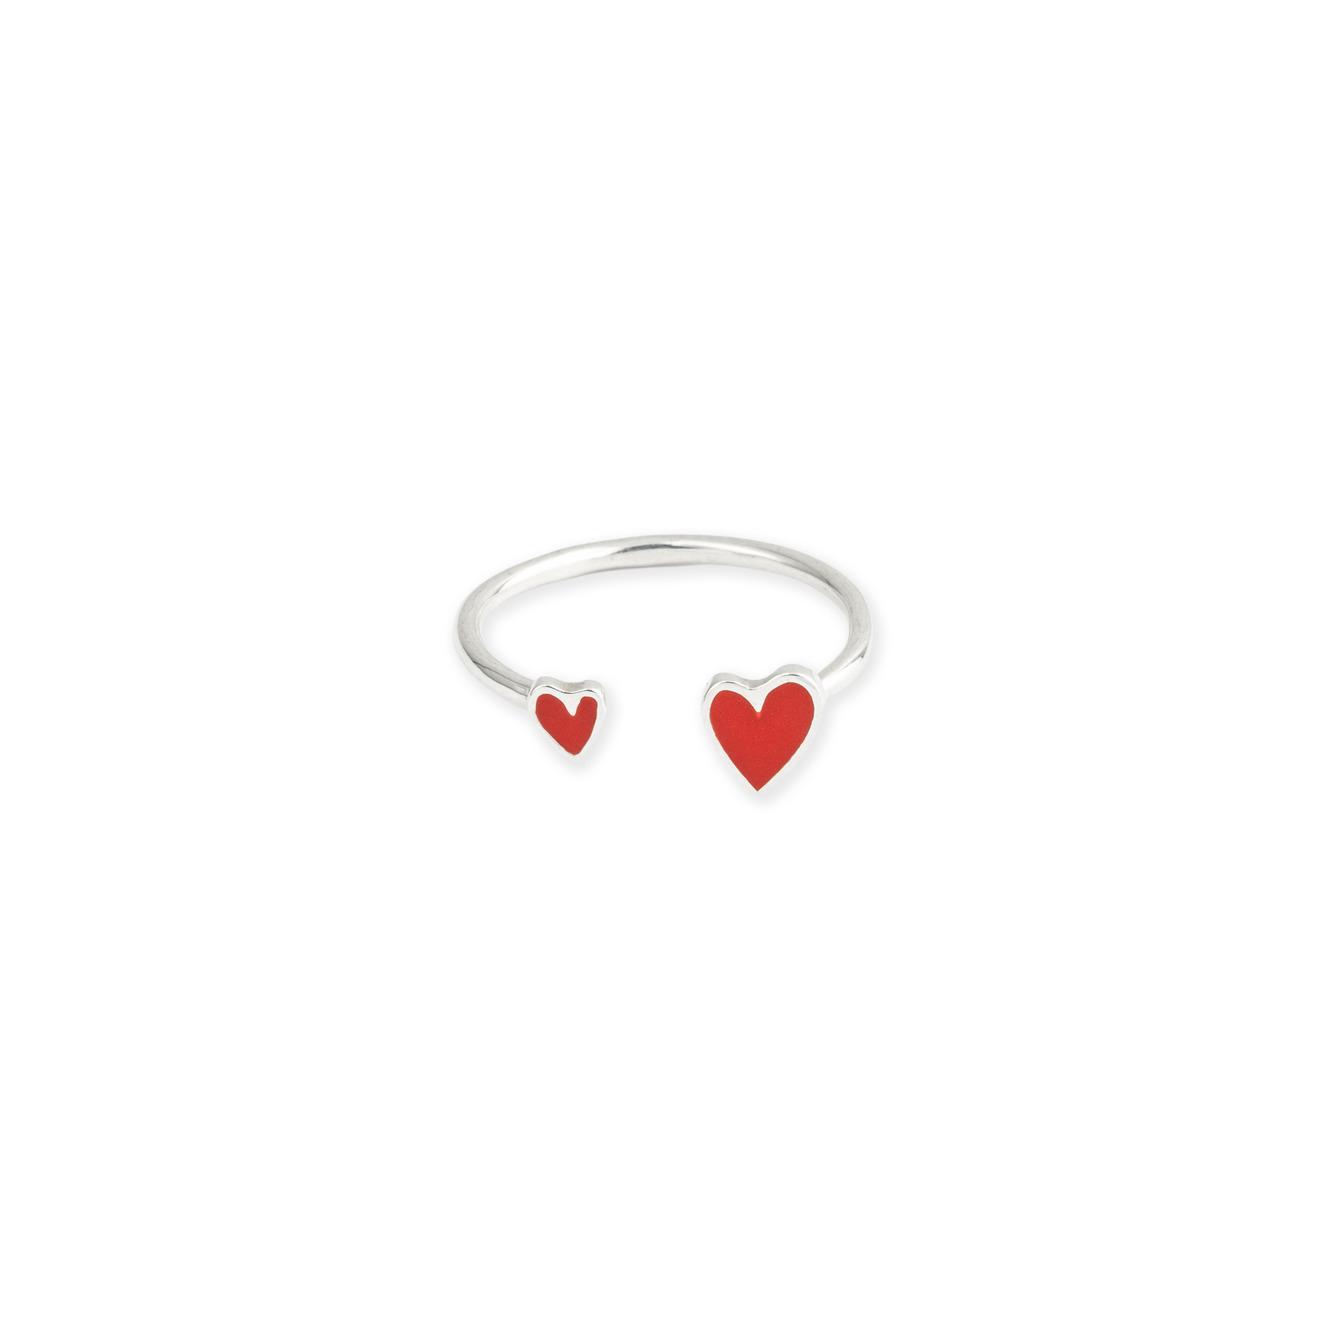 УРА jewelry Кольцо из серебра с двумя сердцами с красной эмалью романтичное кольцо с сердцами размер 18 kalinka